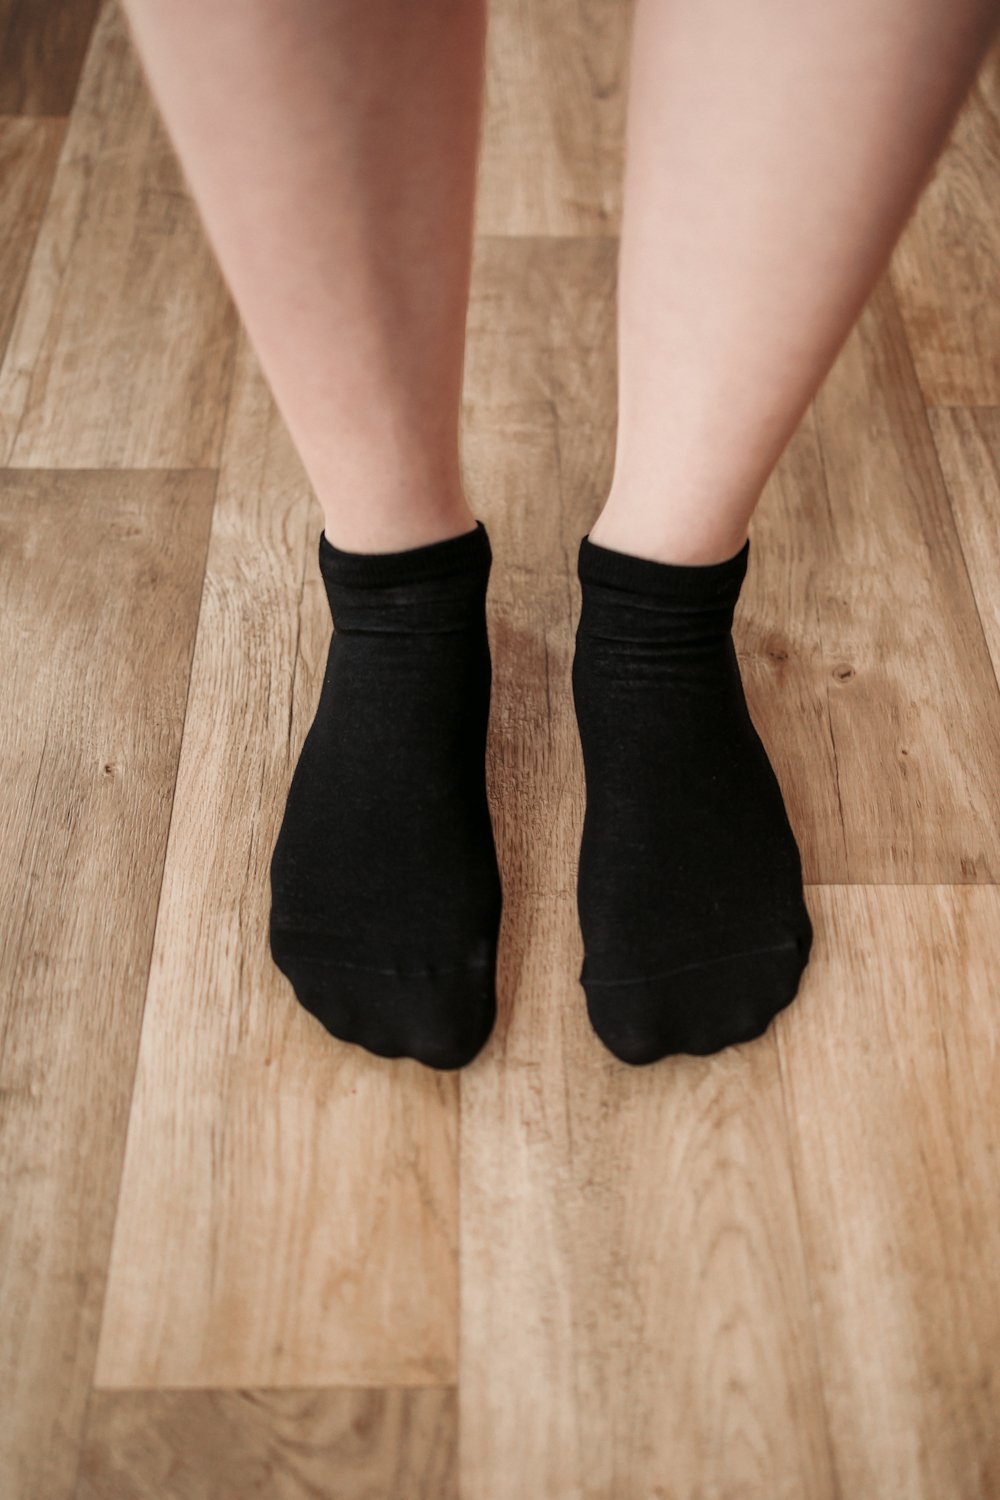 Calcetines Respetuosos - Caminando Descalzos